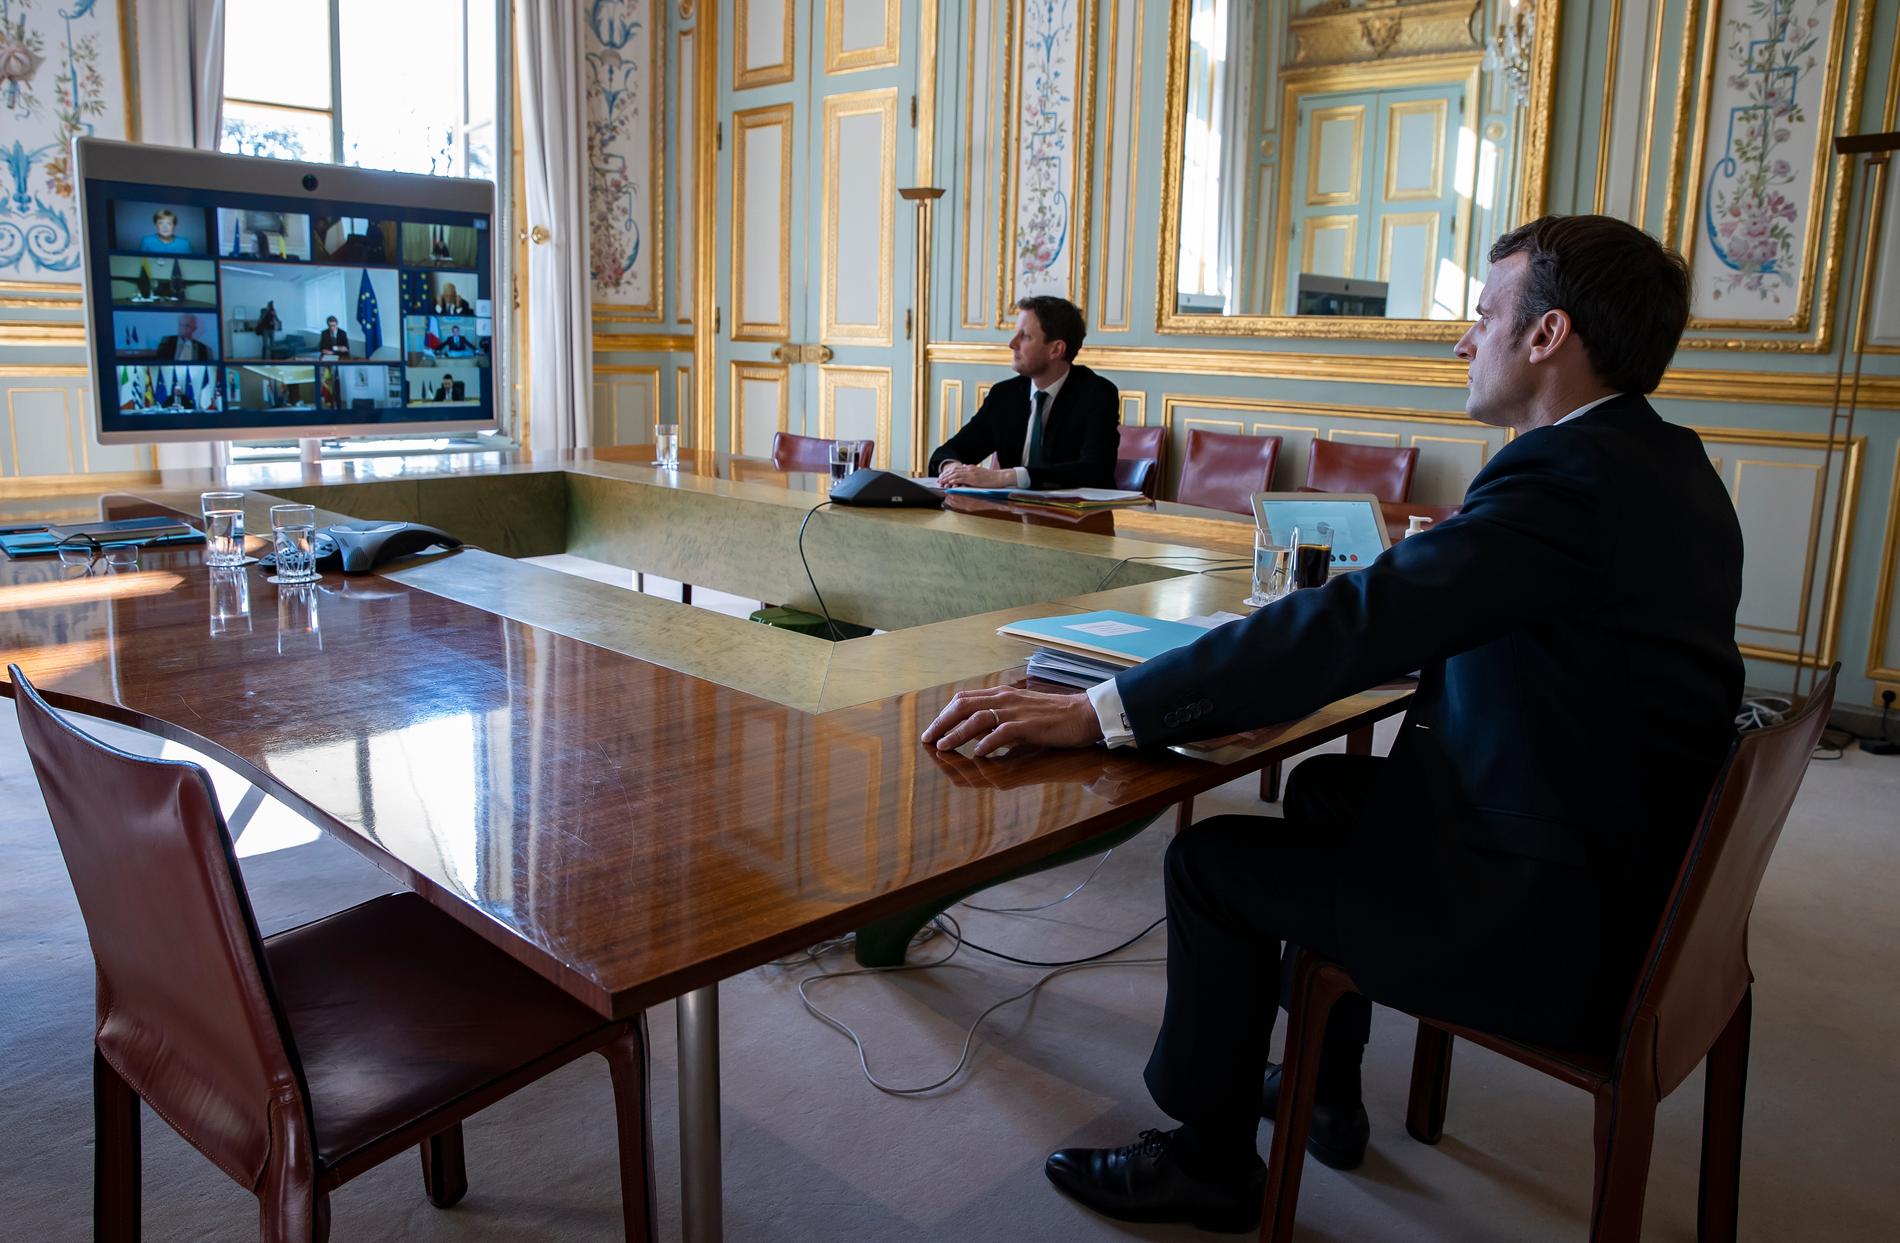 PARIS, FRANKRIKE President Emanuel Macron deltar via videolänk vid Europeiska rådets sammanträde under torsdagen. På dagsordningen för EU-ledarna stod naturligtvis hur smittspridningen ska förhindras i medlemsländerna, samtidigt som de förödande effekterna på ekonomin begränsas.